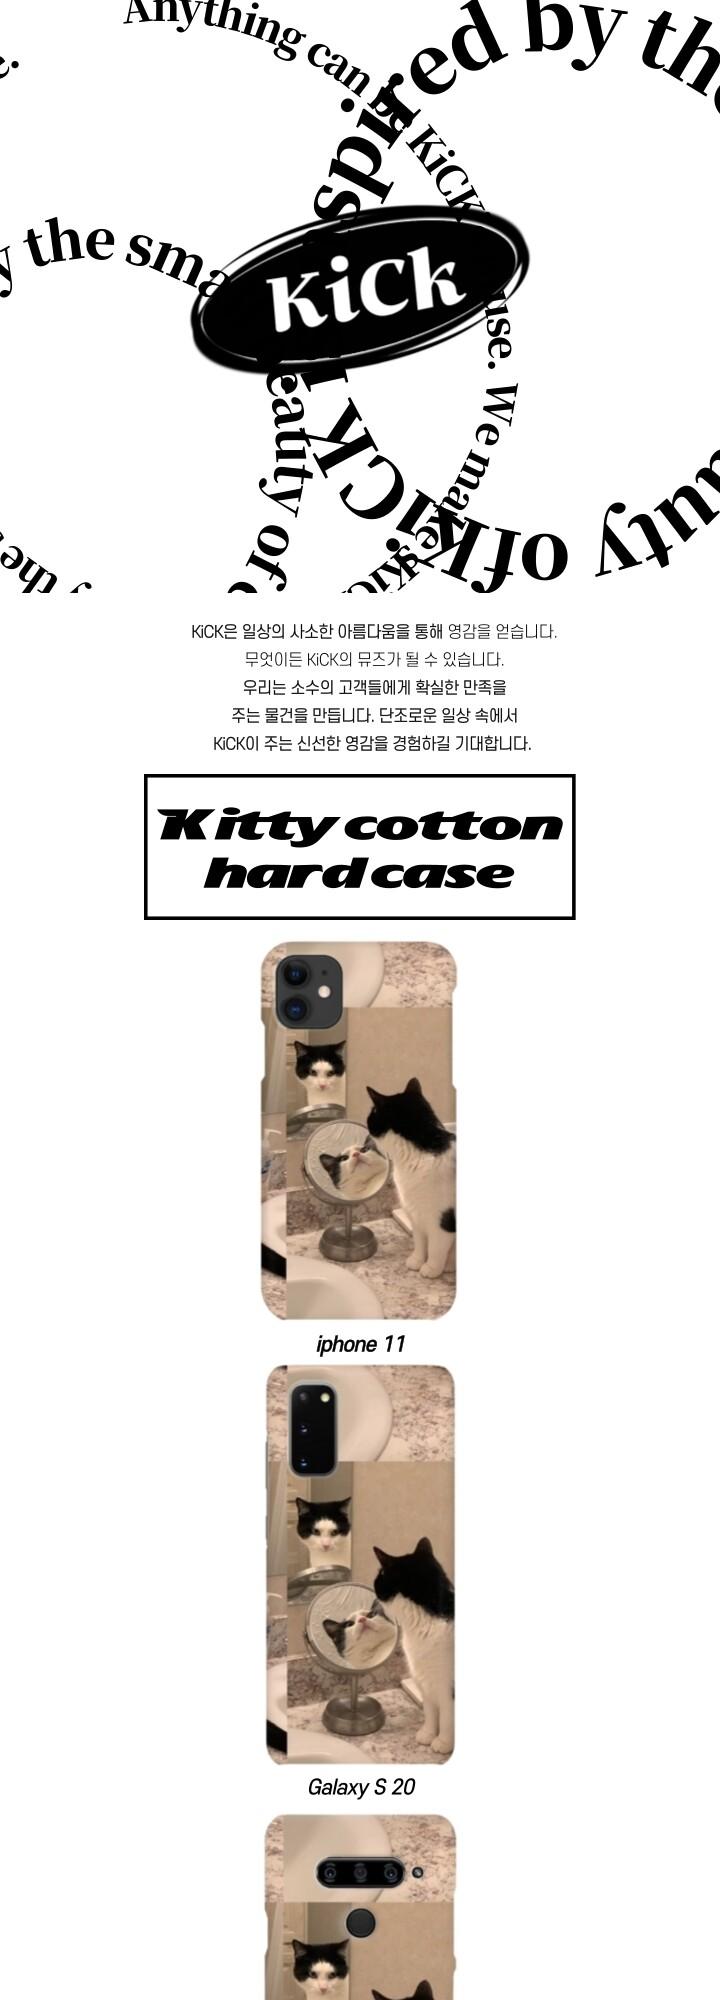 Kitty Cotton Hard Case